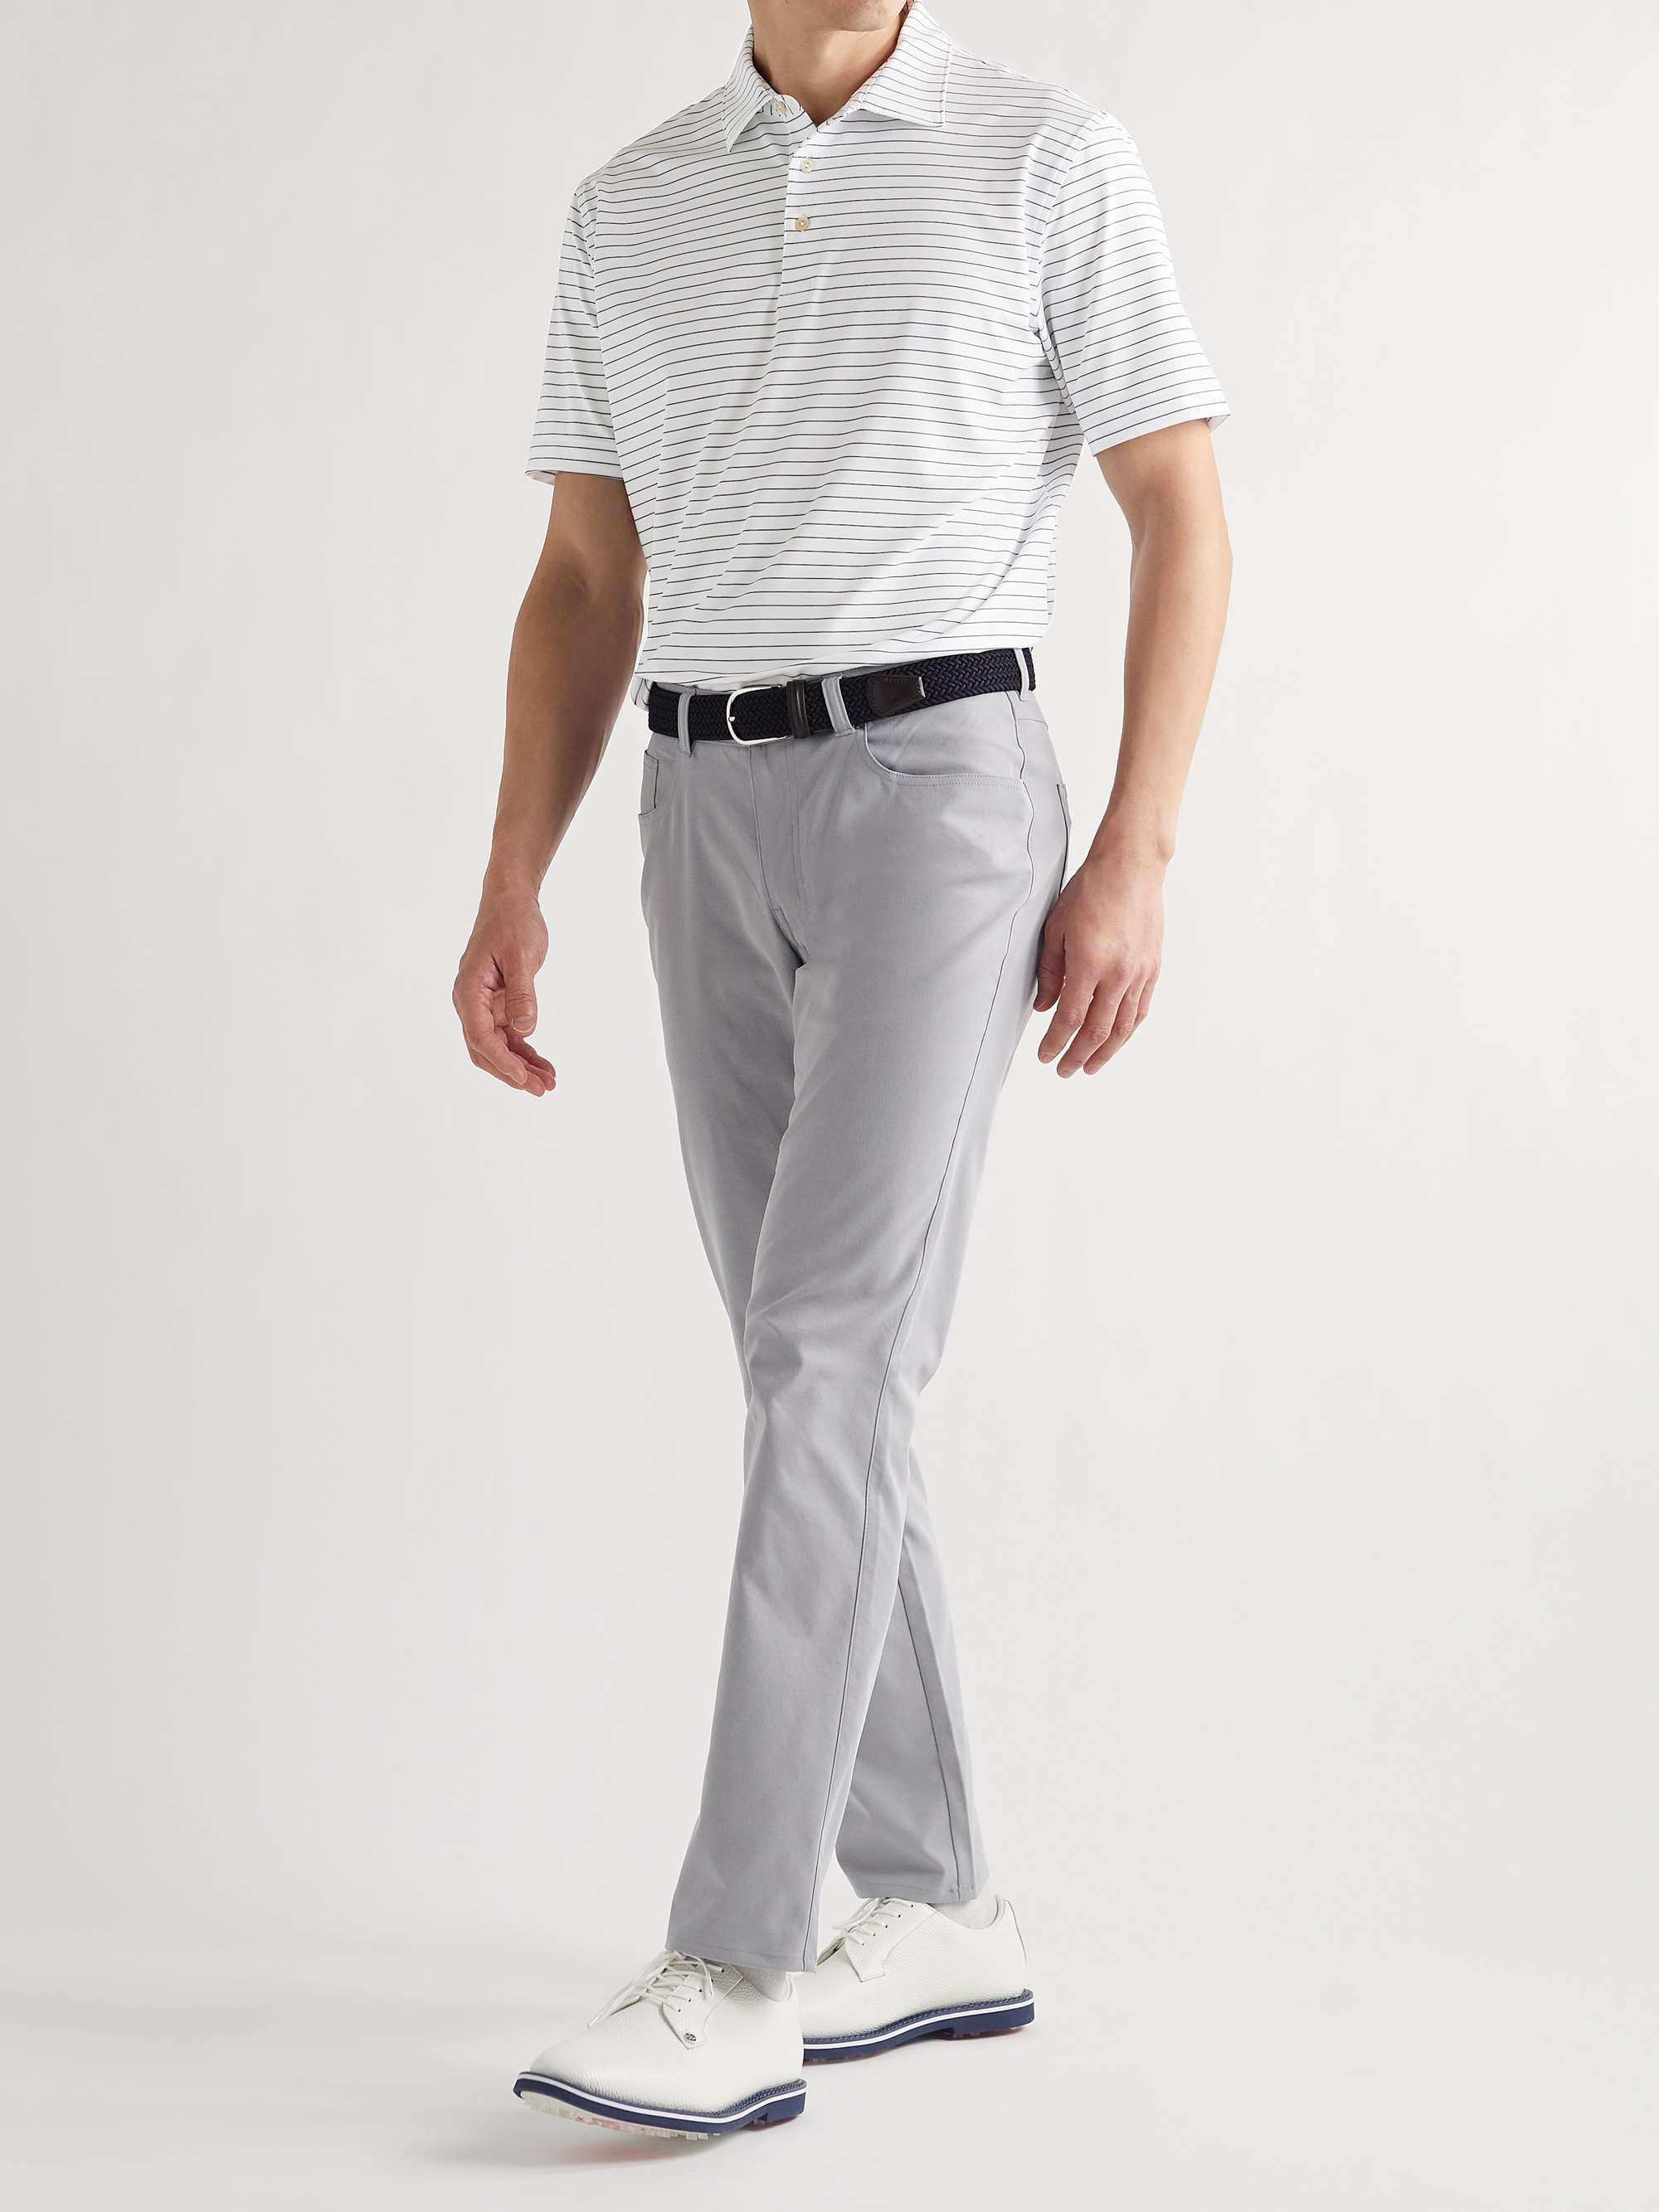 PETER MILLAR Drum Striped Tech-Jersey Golf Polo Shirt